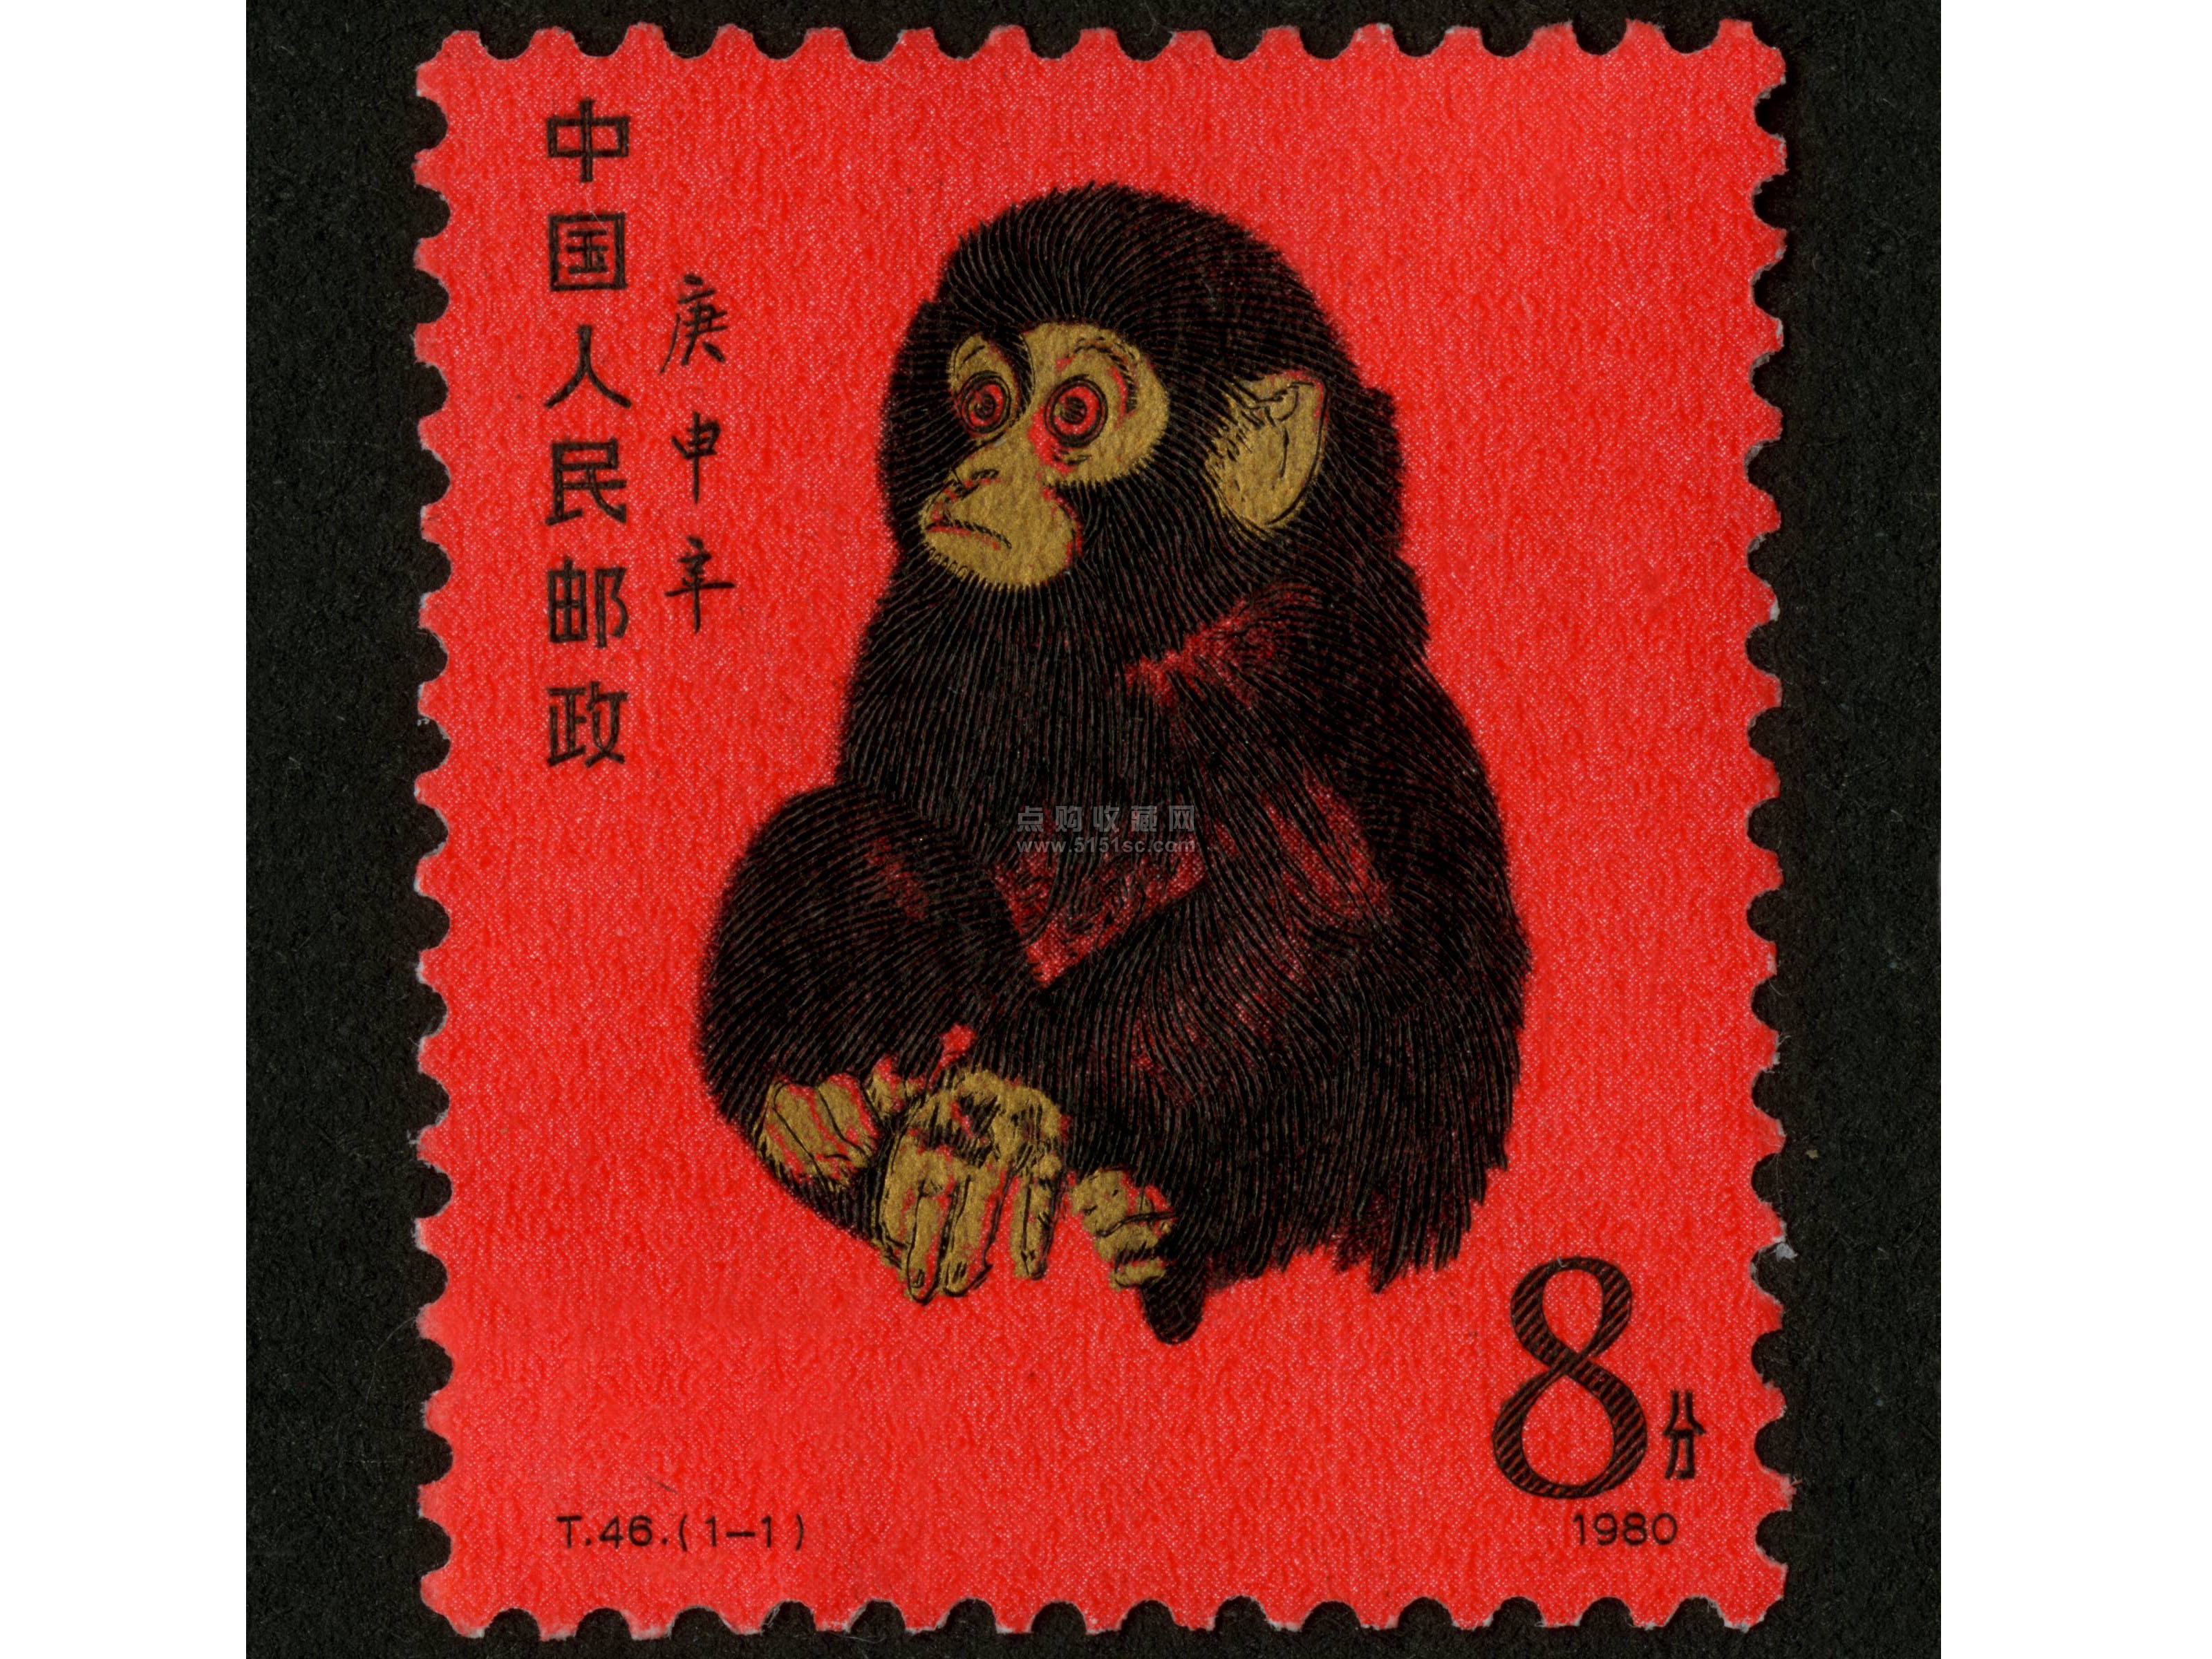 【图案面值】 t (1-1)金猴 8分 500 万枚   邮票图案为著名画家黄永玉